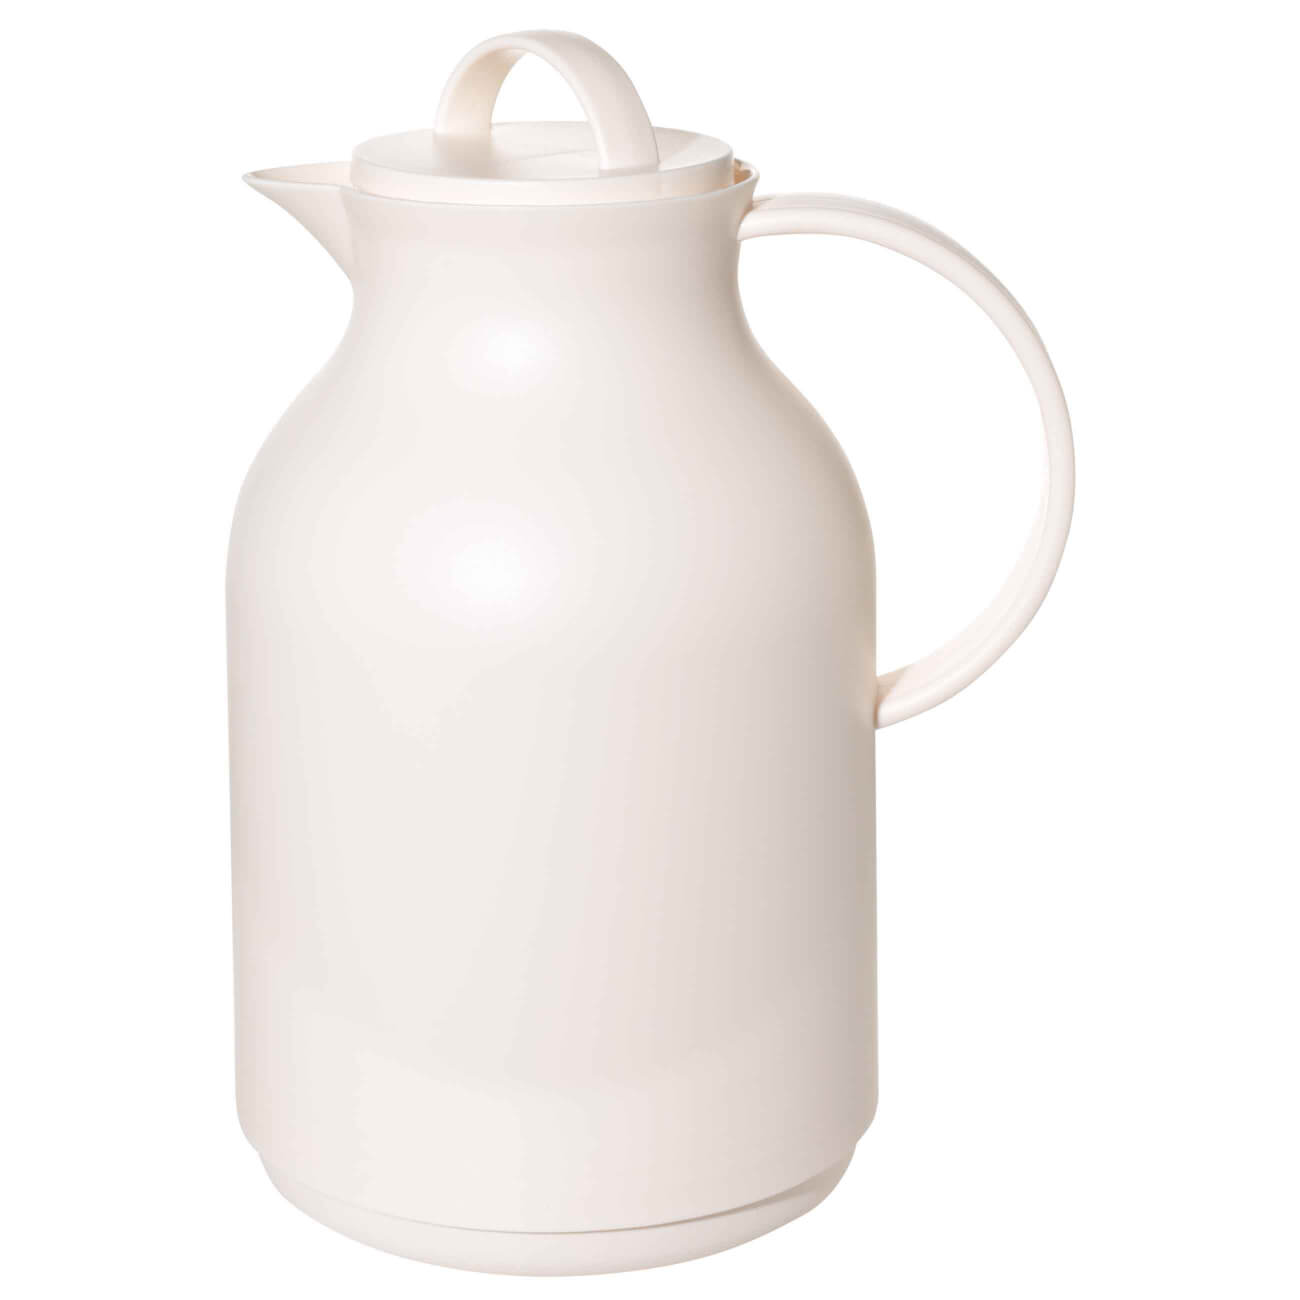 Термос, 940 мл, пластик/стекло Б, белый, Style термос funjia accompanying mug 450мл белый 00 00000130